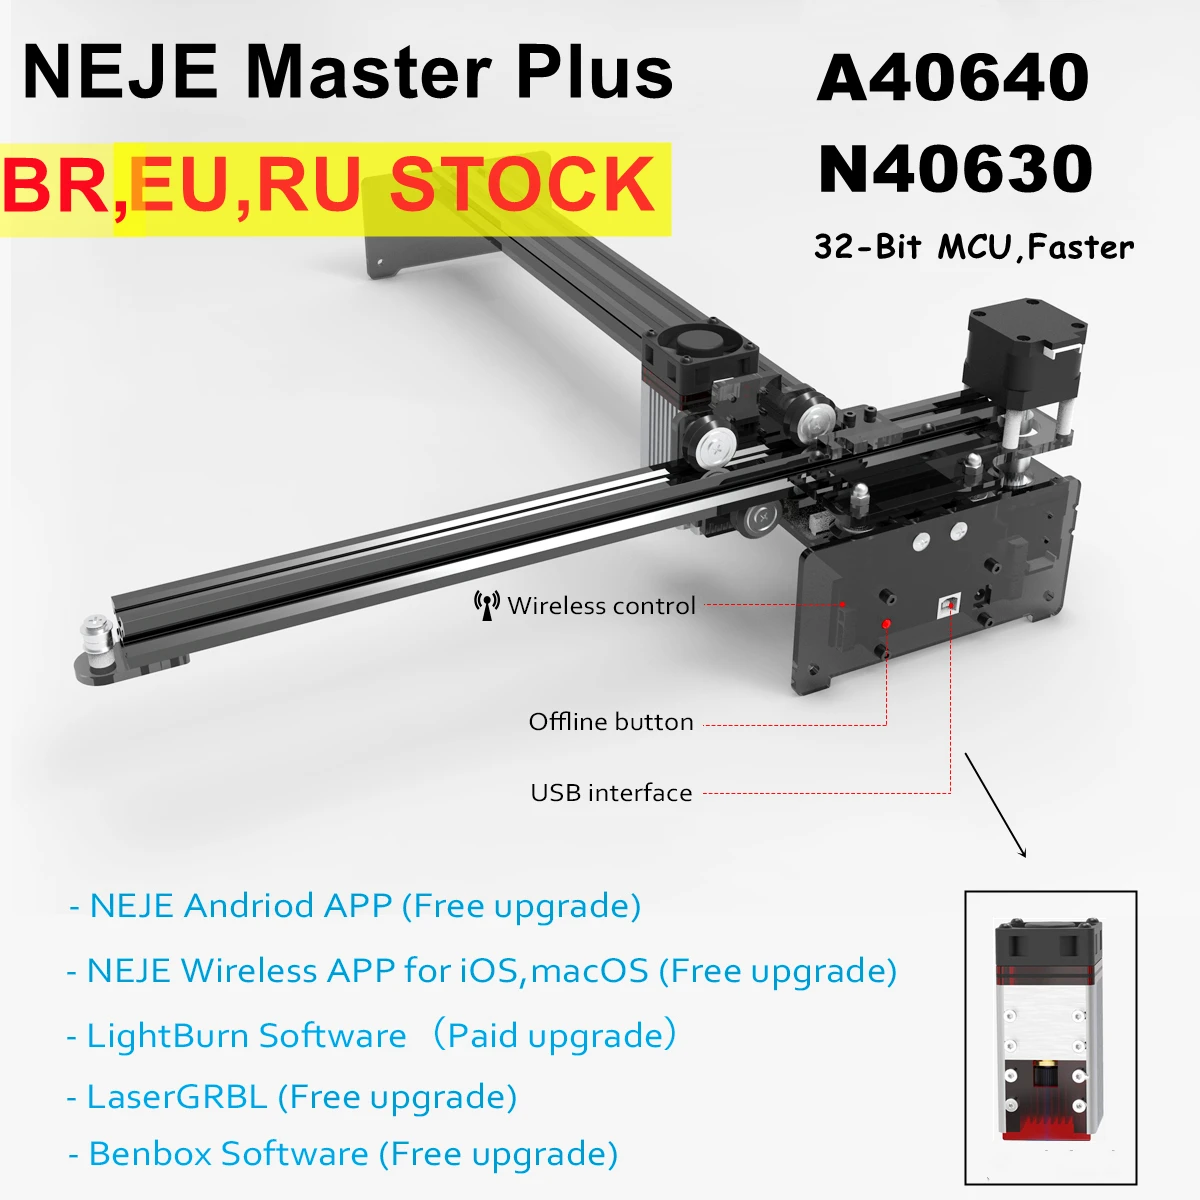 NEJE Master Plus A40640 80W CNC Laser Engraver Cutter Drucker Schneiden Maschine Router Lightburn Bluetooth Holz Metall Mark Werkzeuge